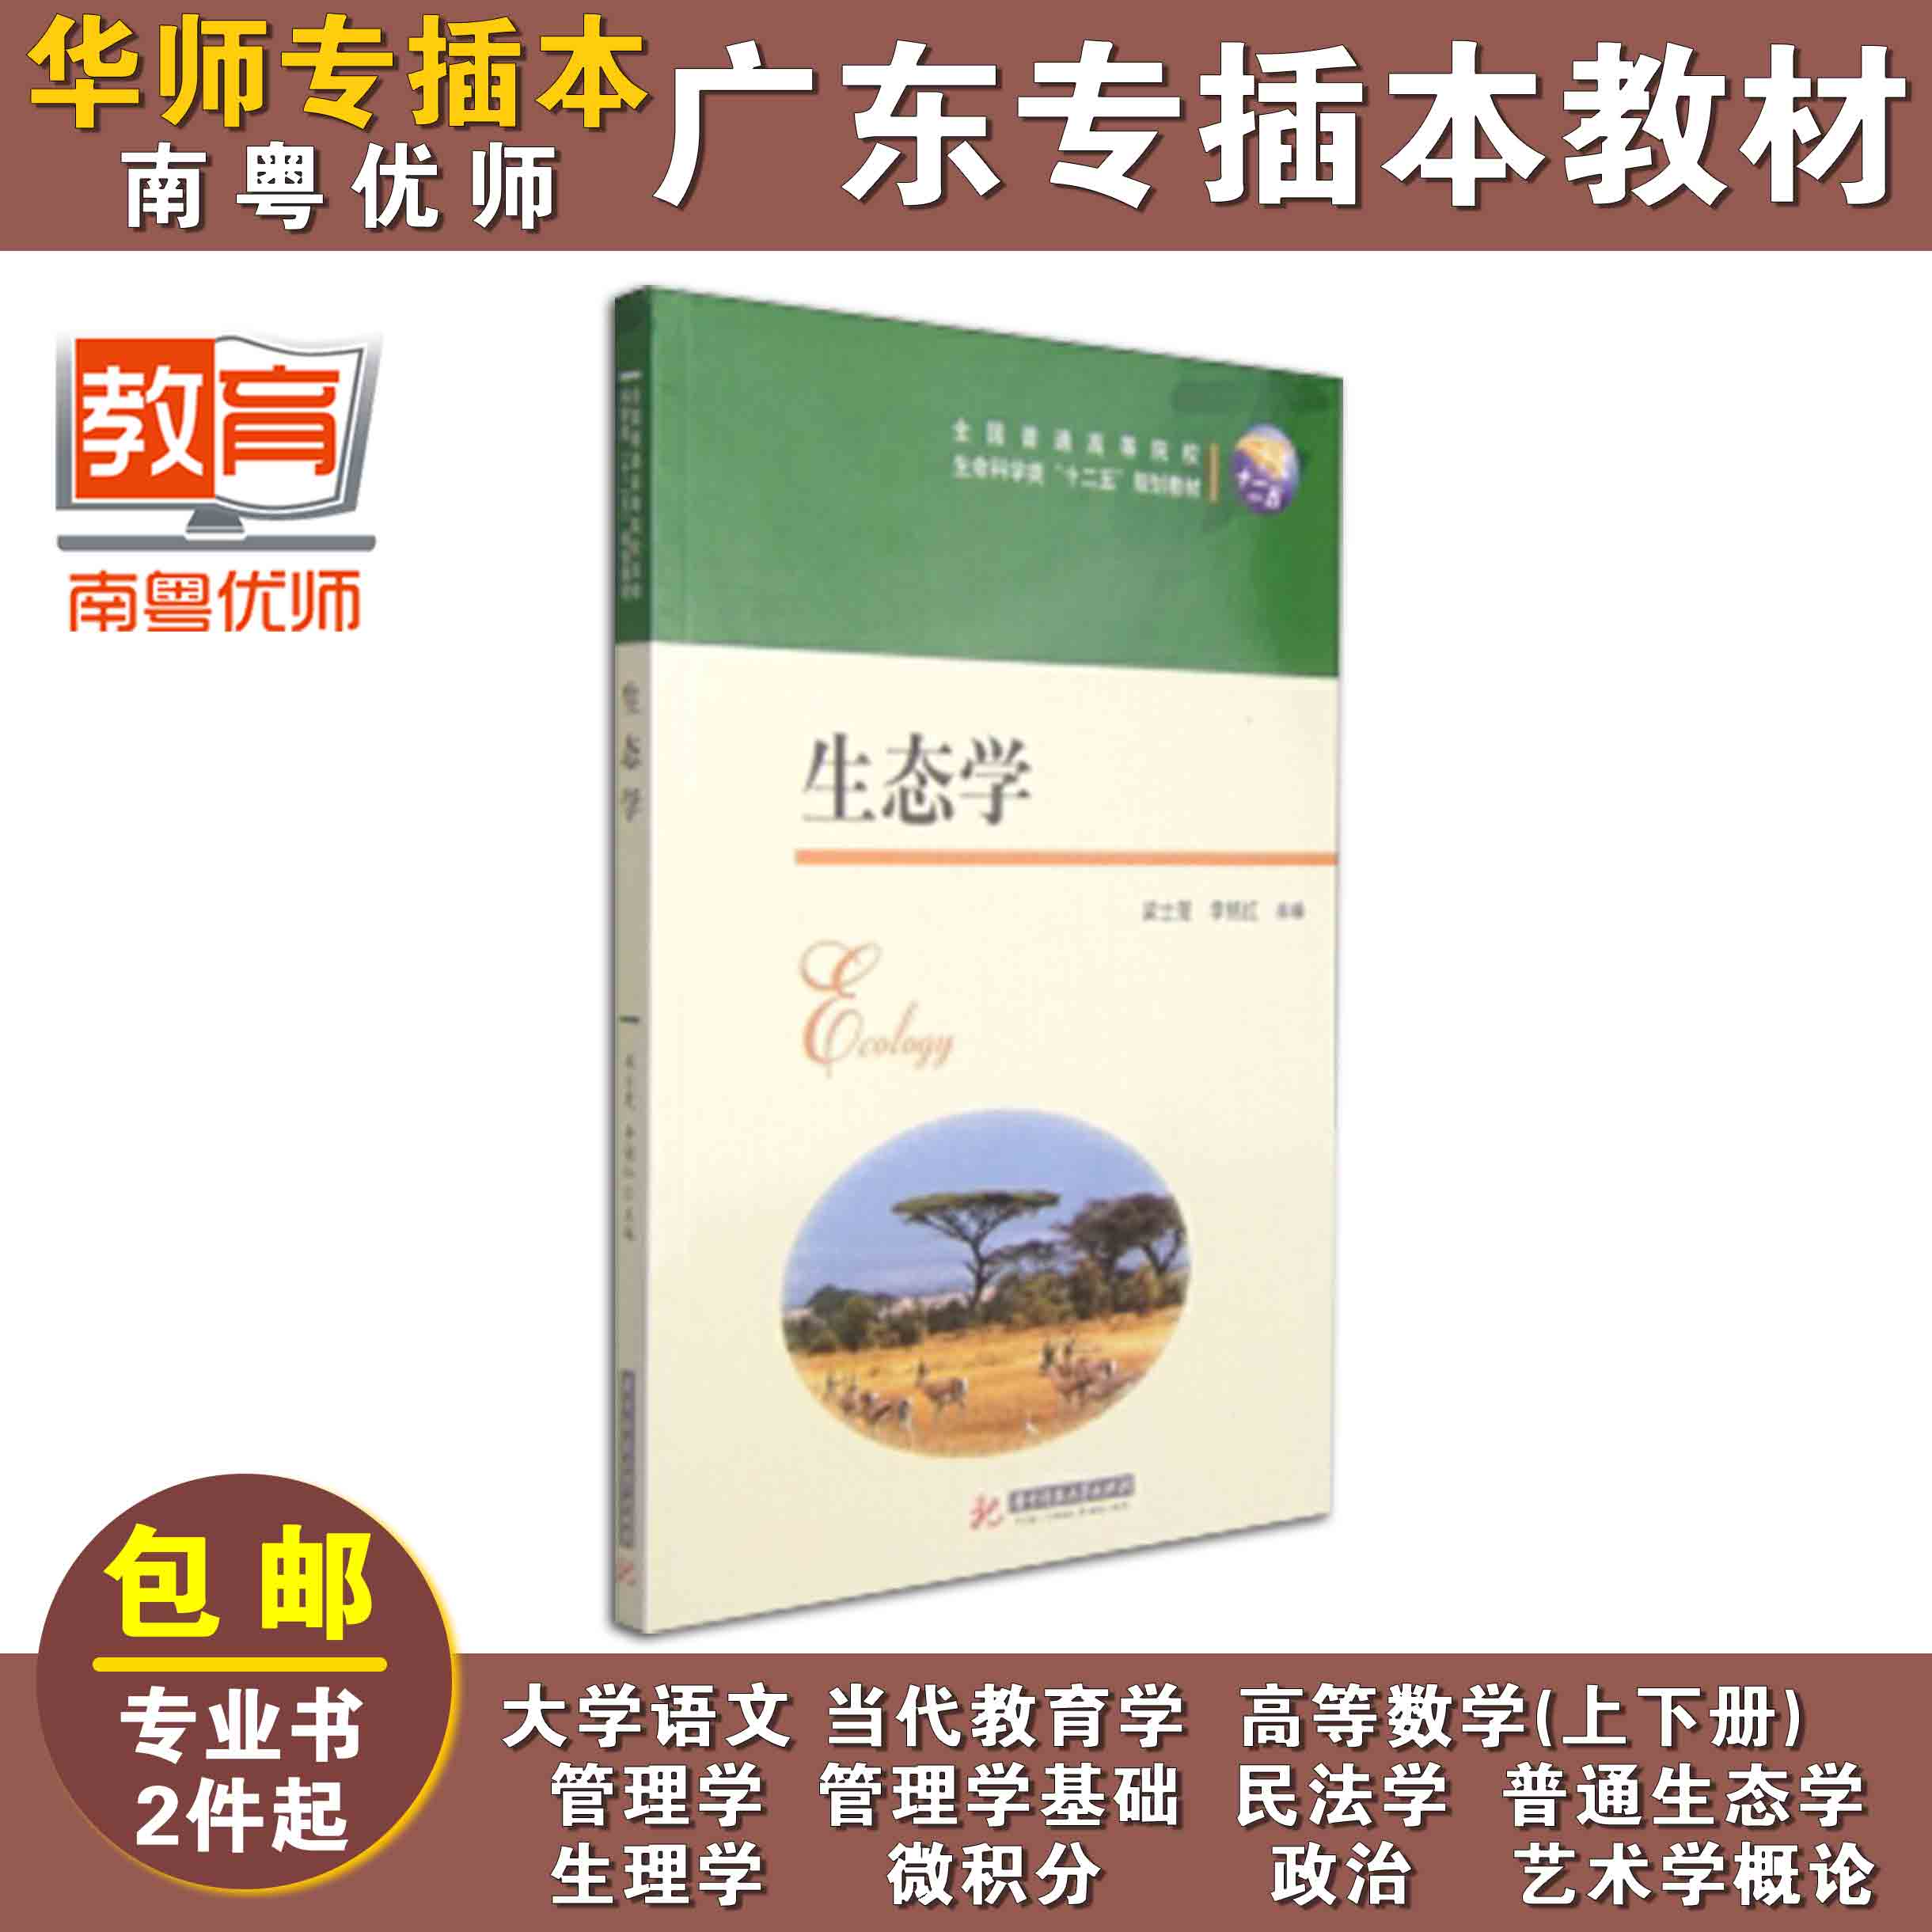 生态学,梁士楚,李铭红,华中科技大学出版